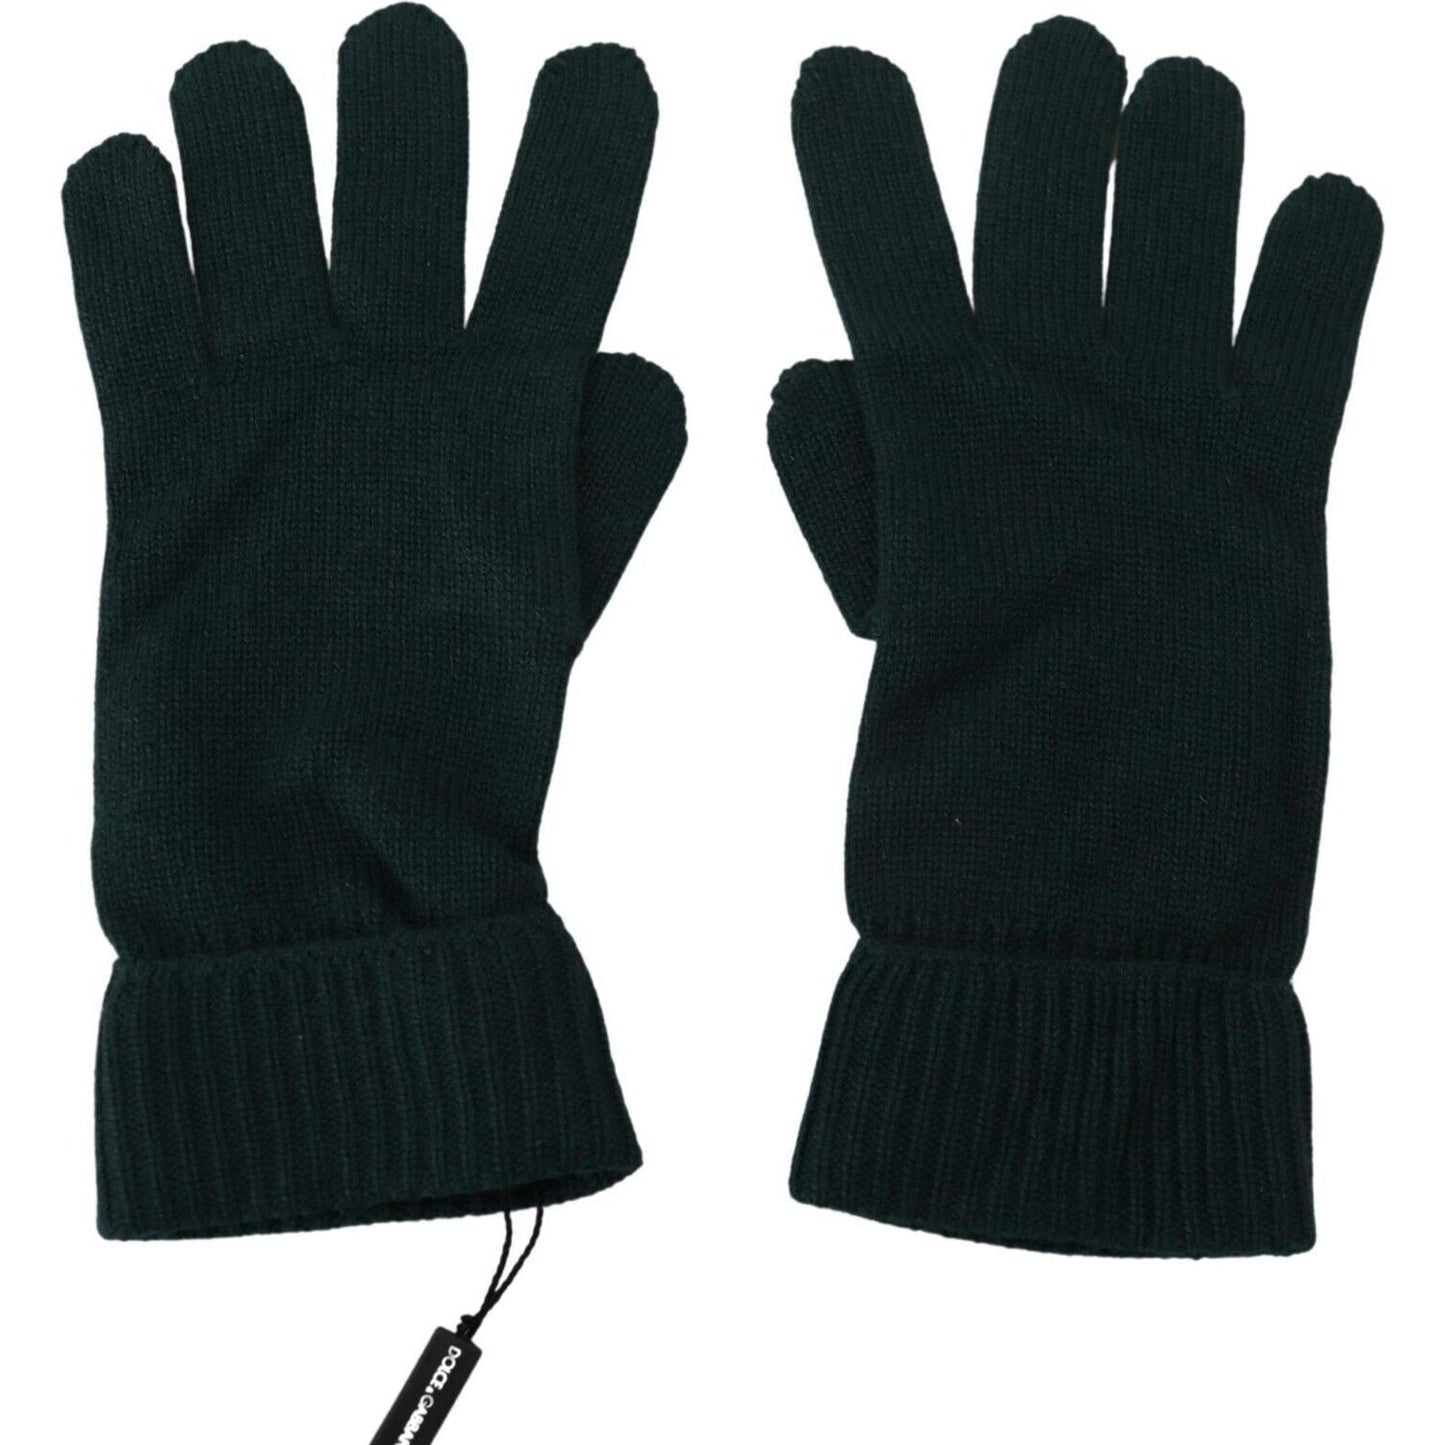 Dolce & GabbanaElegant Cashmere Wrist Length Gloves in Dark GreenMcRichard Designer Brands£219.00